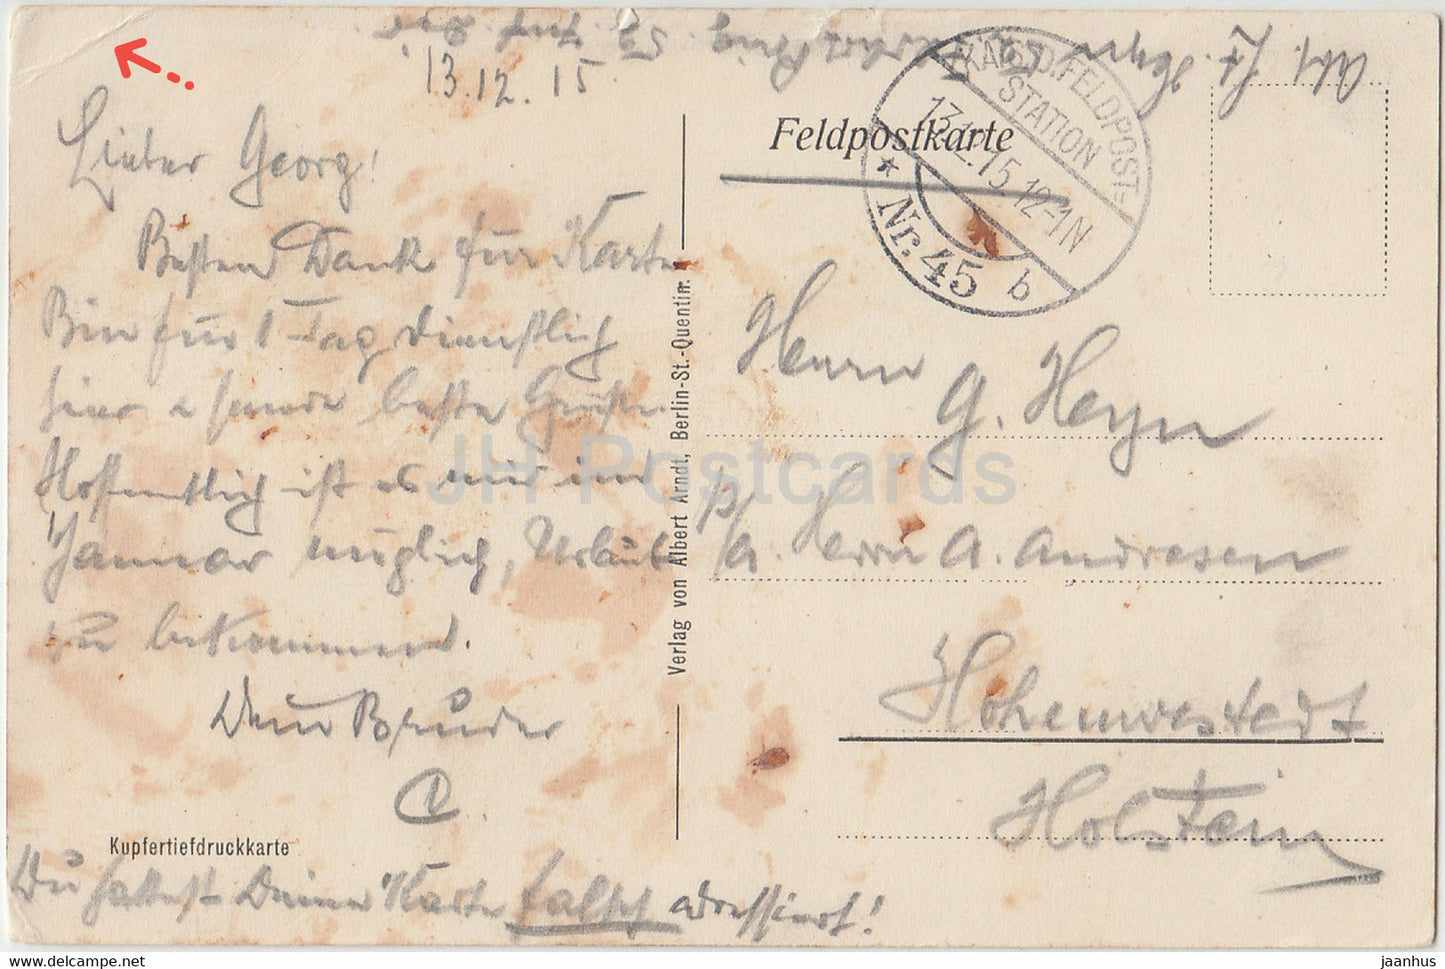 Gruss aus St Quentin - Kathedrale - cathédrale - Feldpost - carte postale ancienne - 1915 - France - utilisé